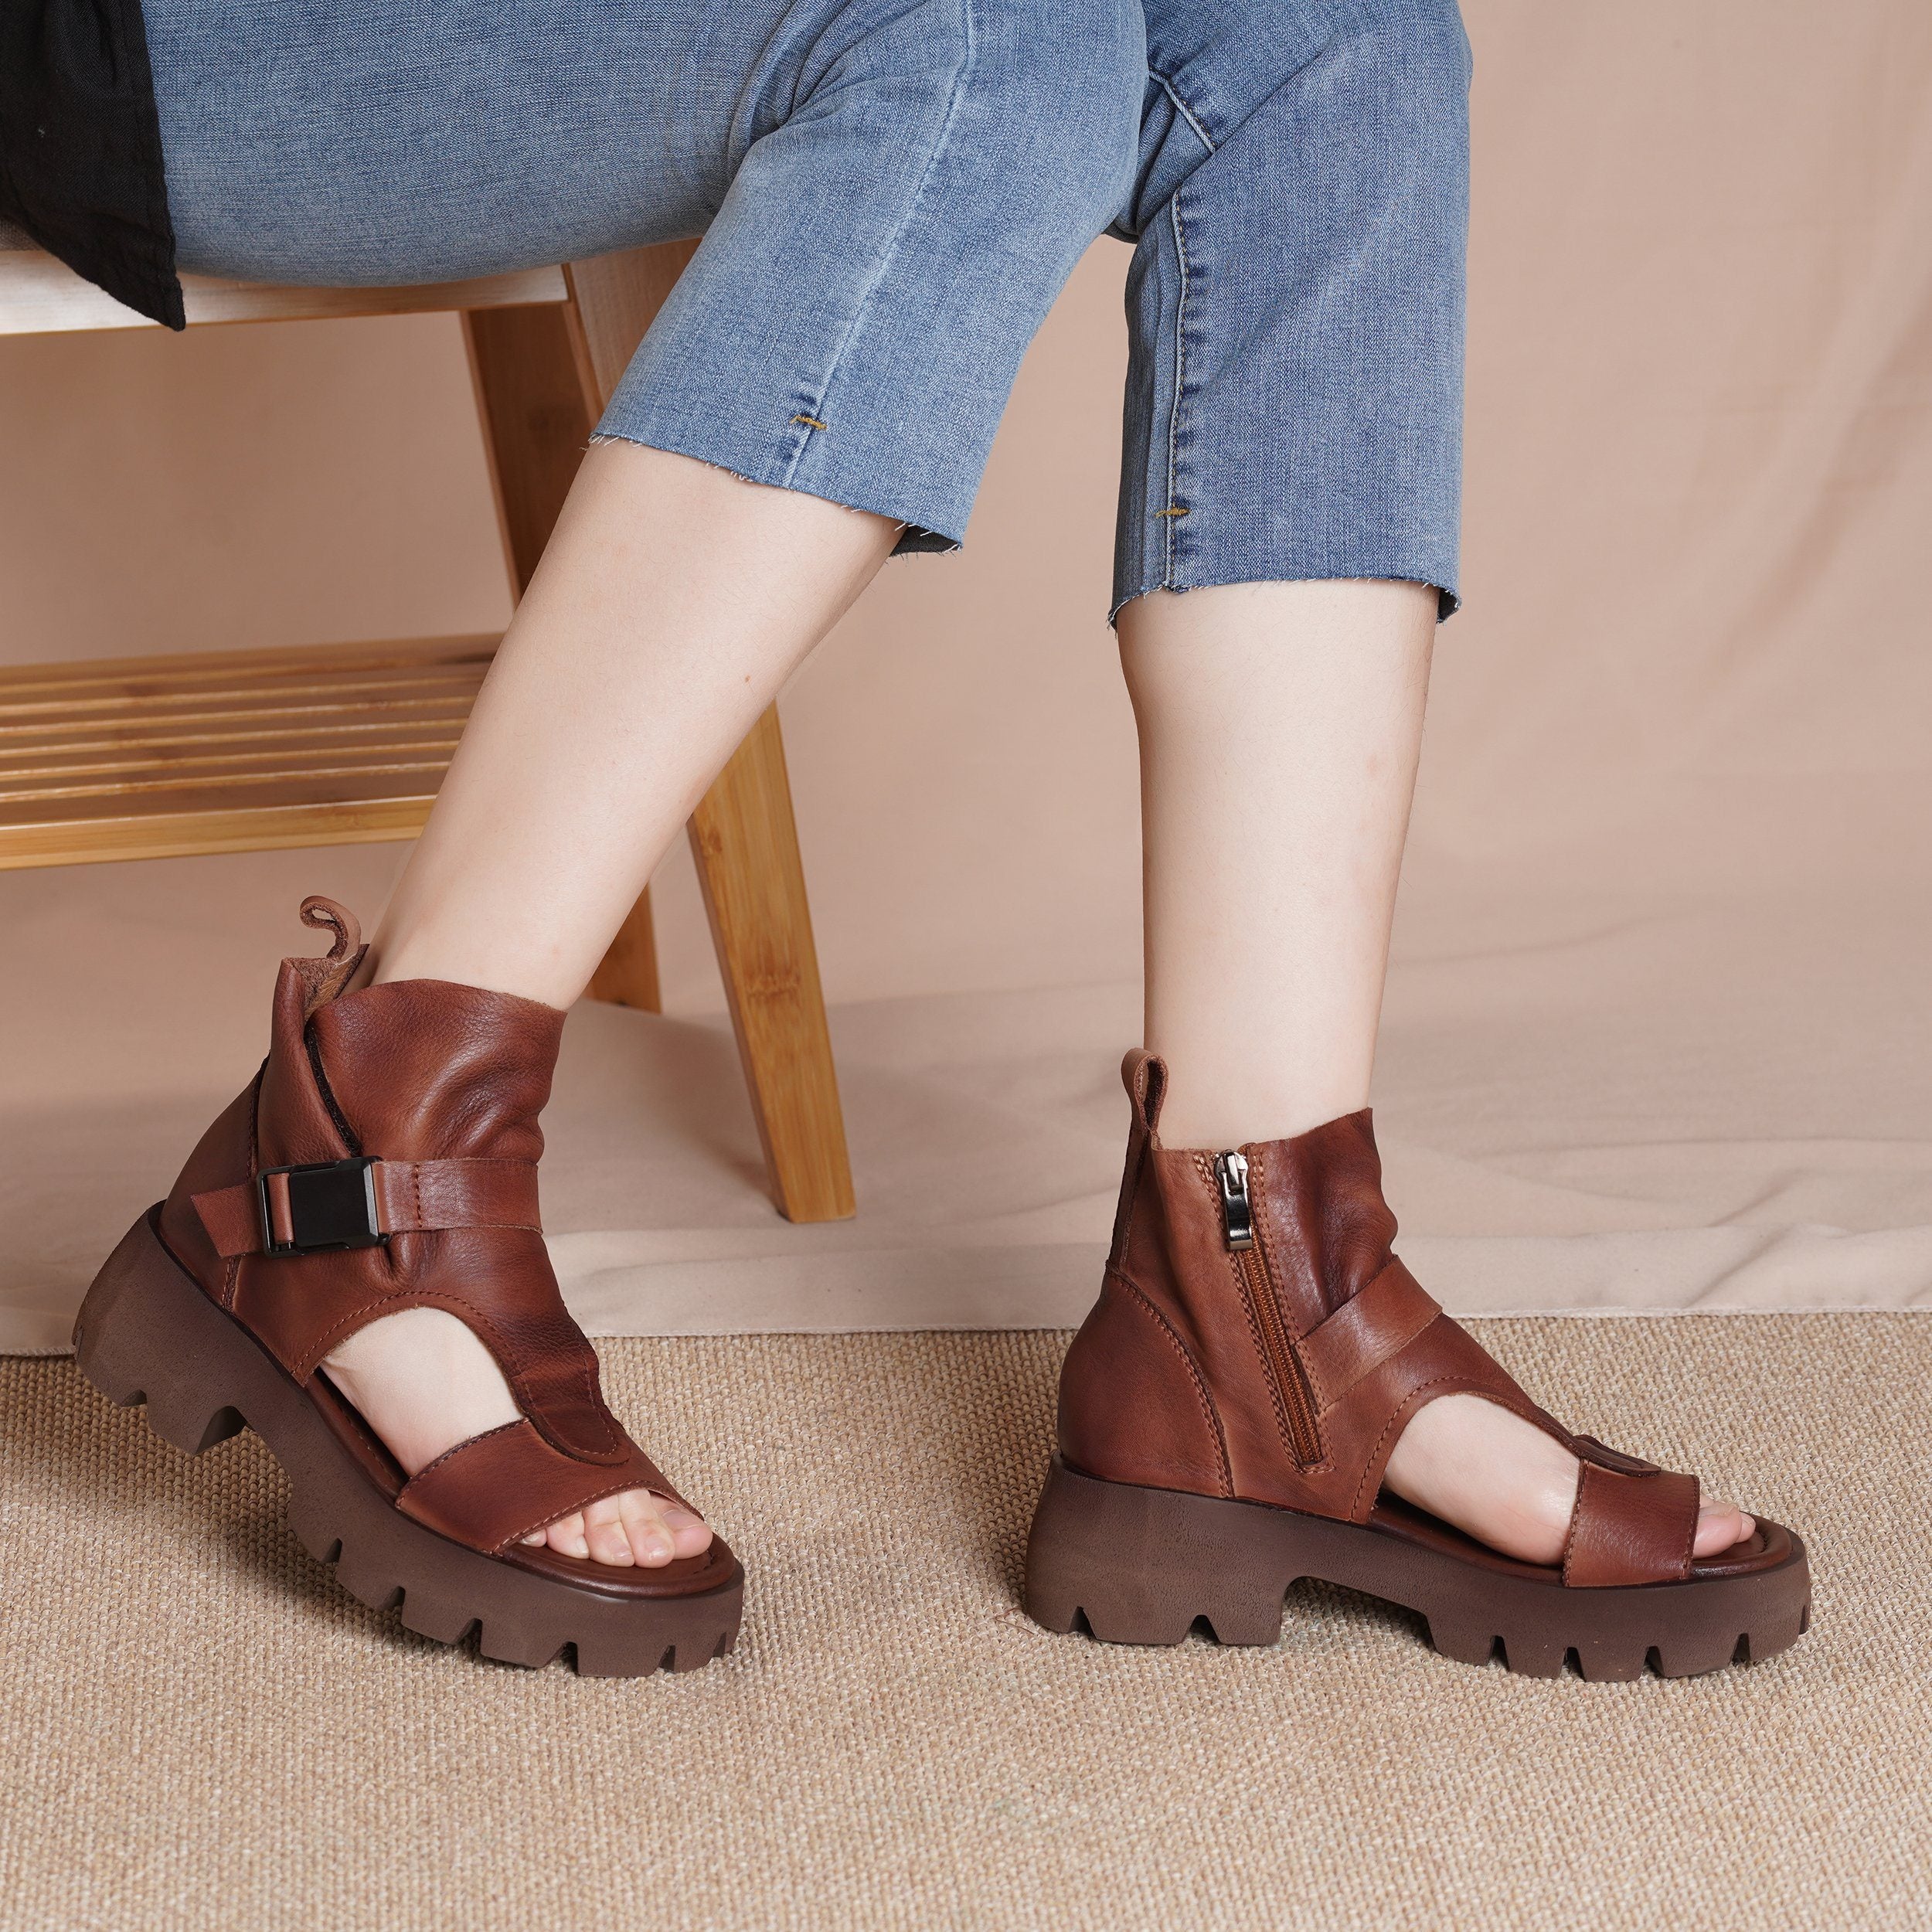 Genuine Platform Sandals Boots  Peep Toe Buckle Sandals Side Zipper BlackNew/BrownNew/Black/Brown